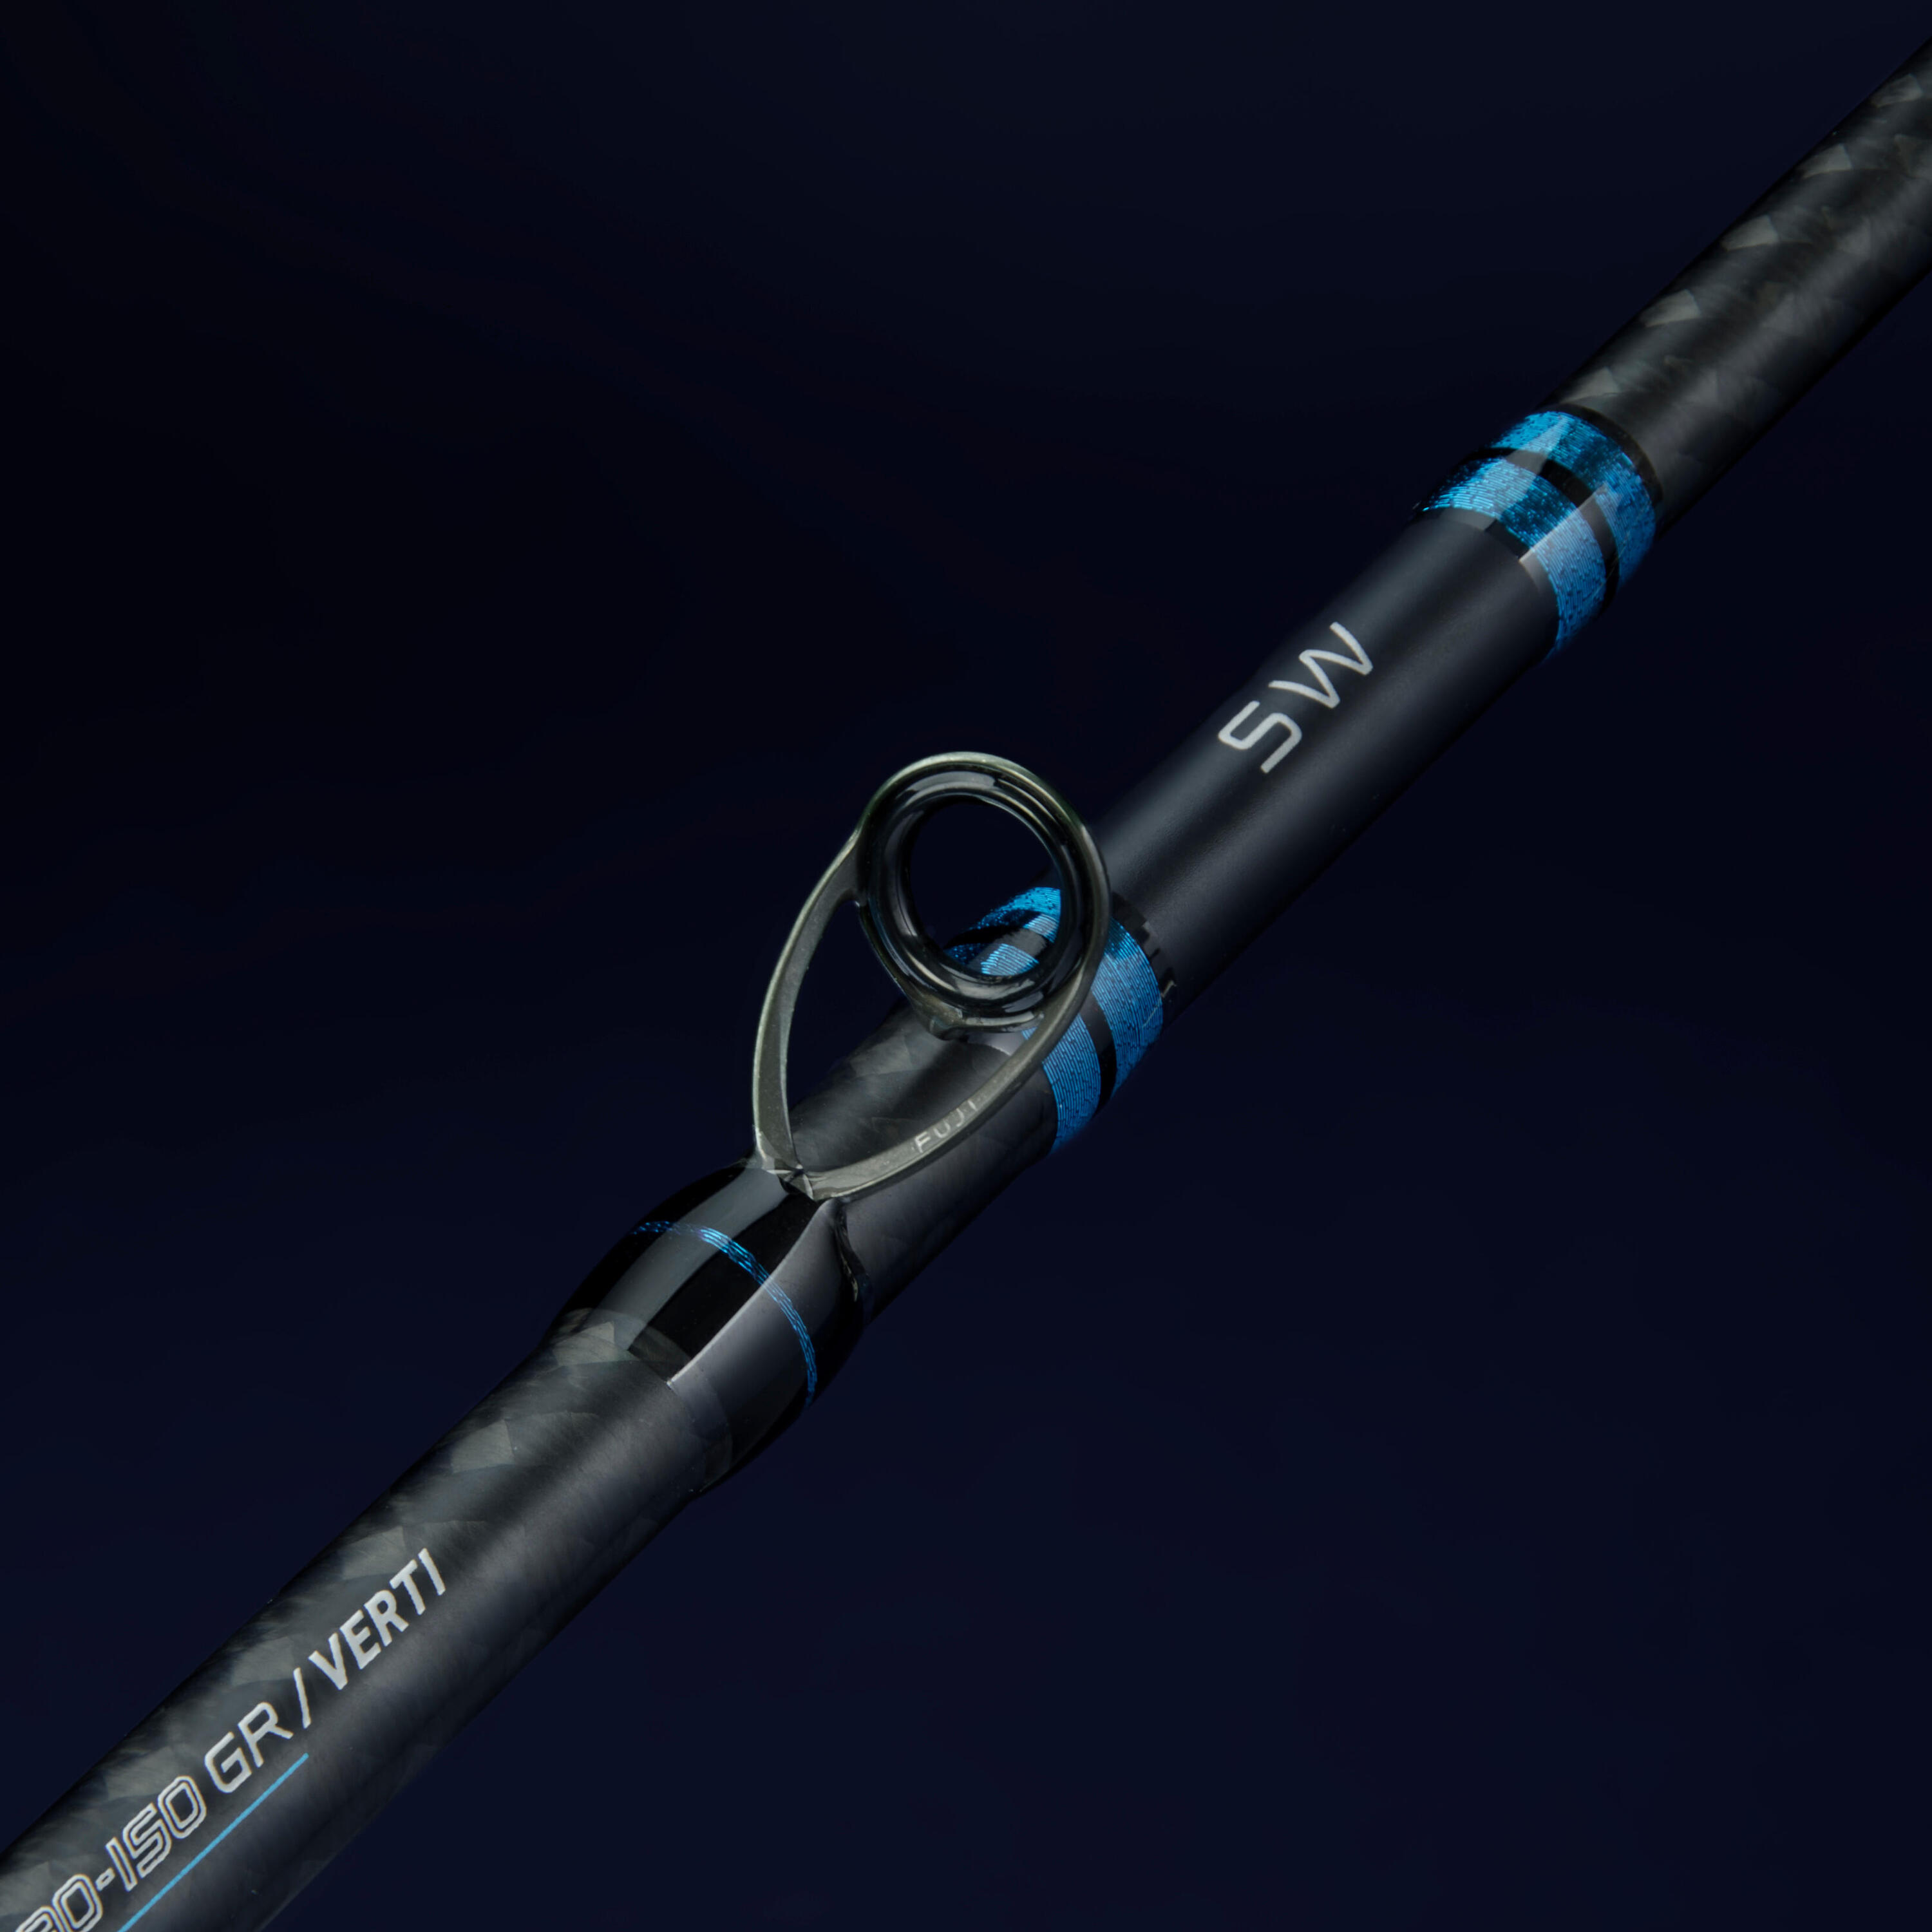 Sea Lure Fishing Casting Rod ILICIUM CASTING-900 210 30-150 g 6/7